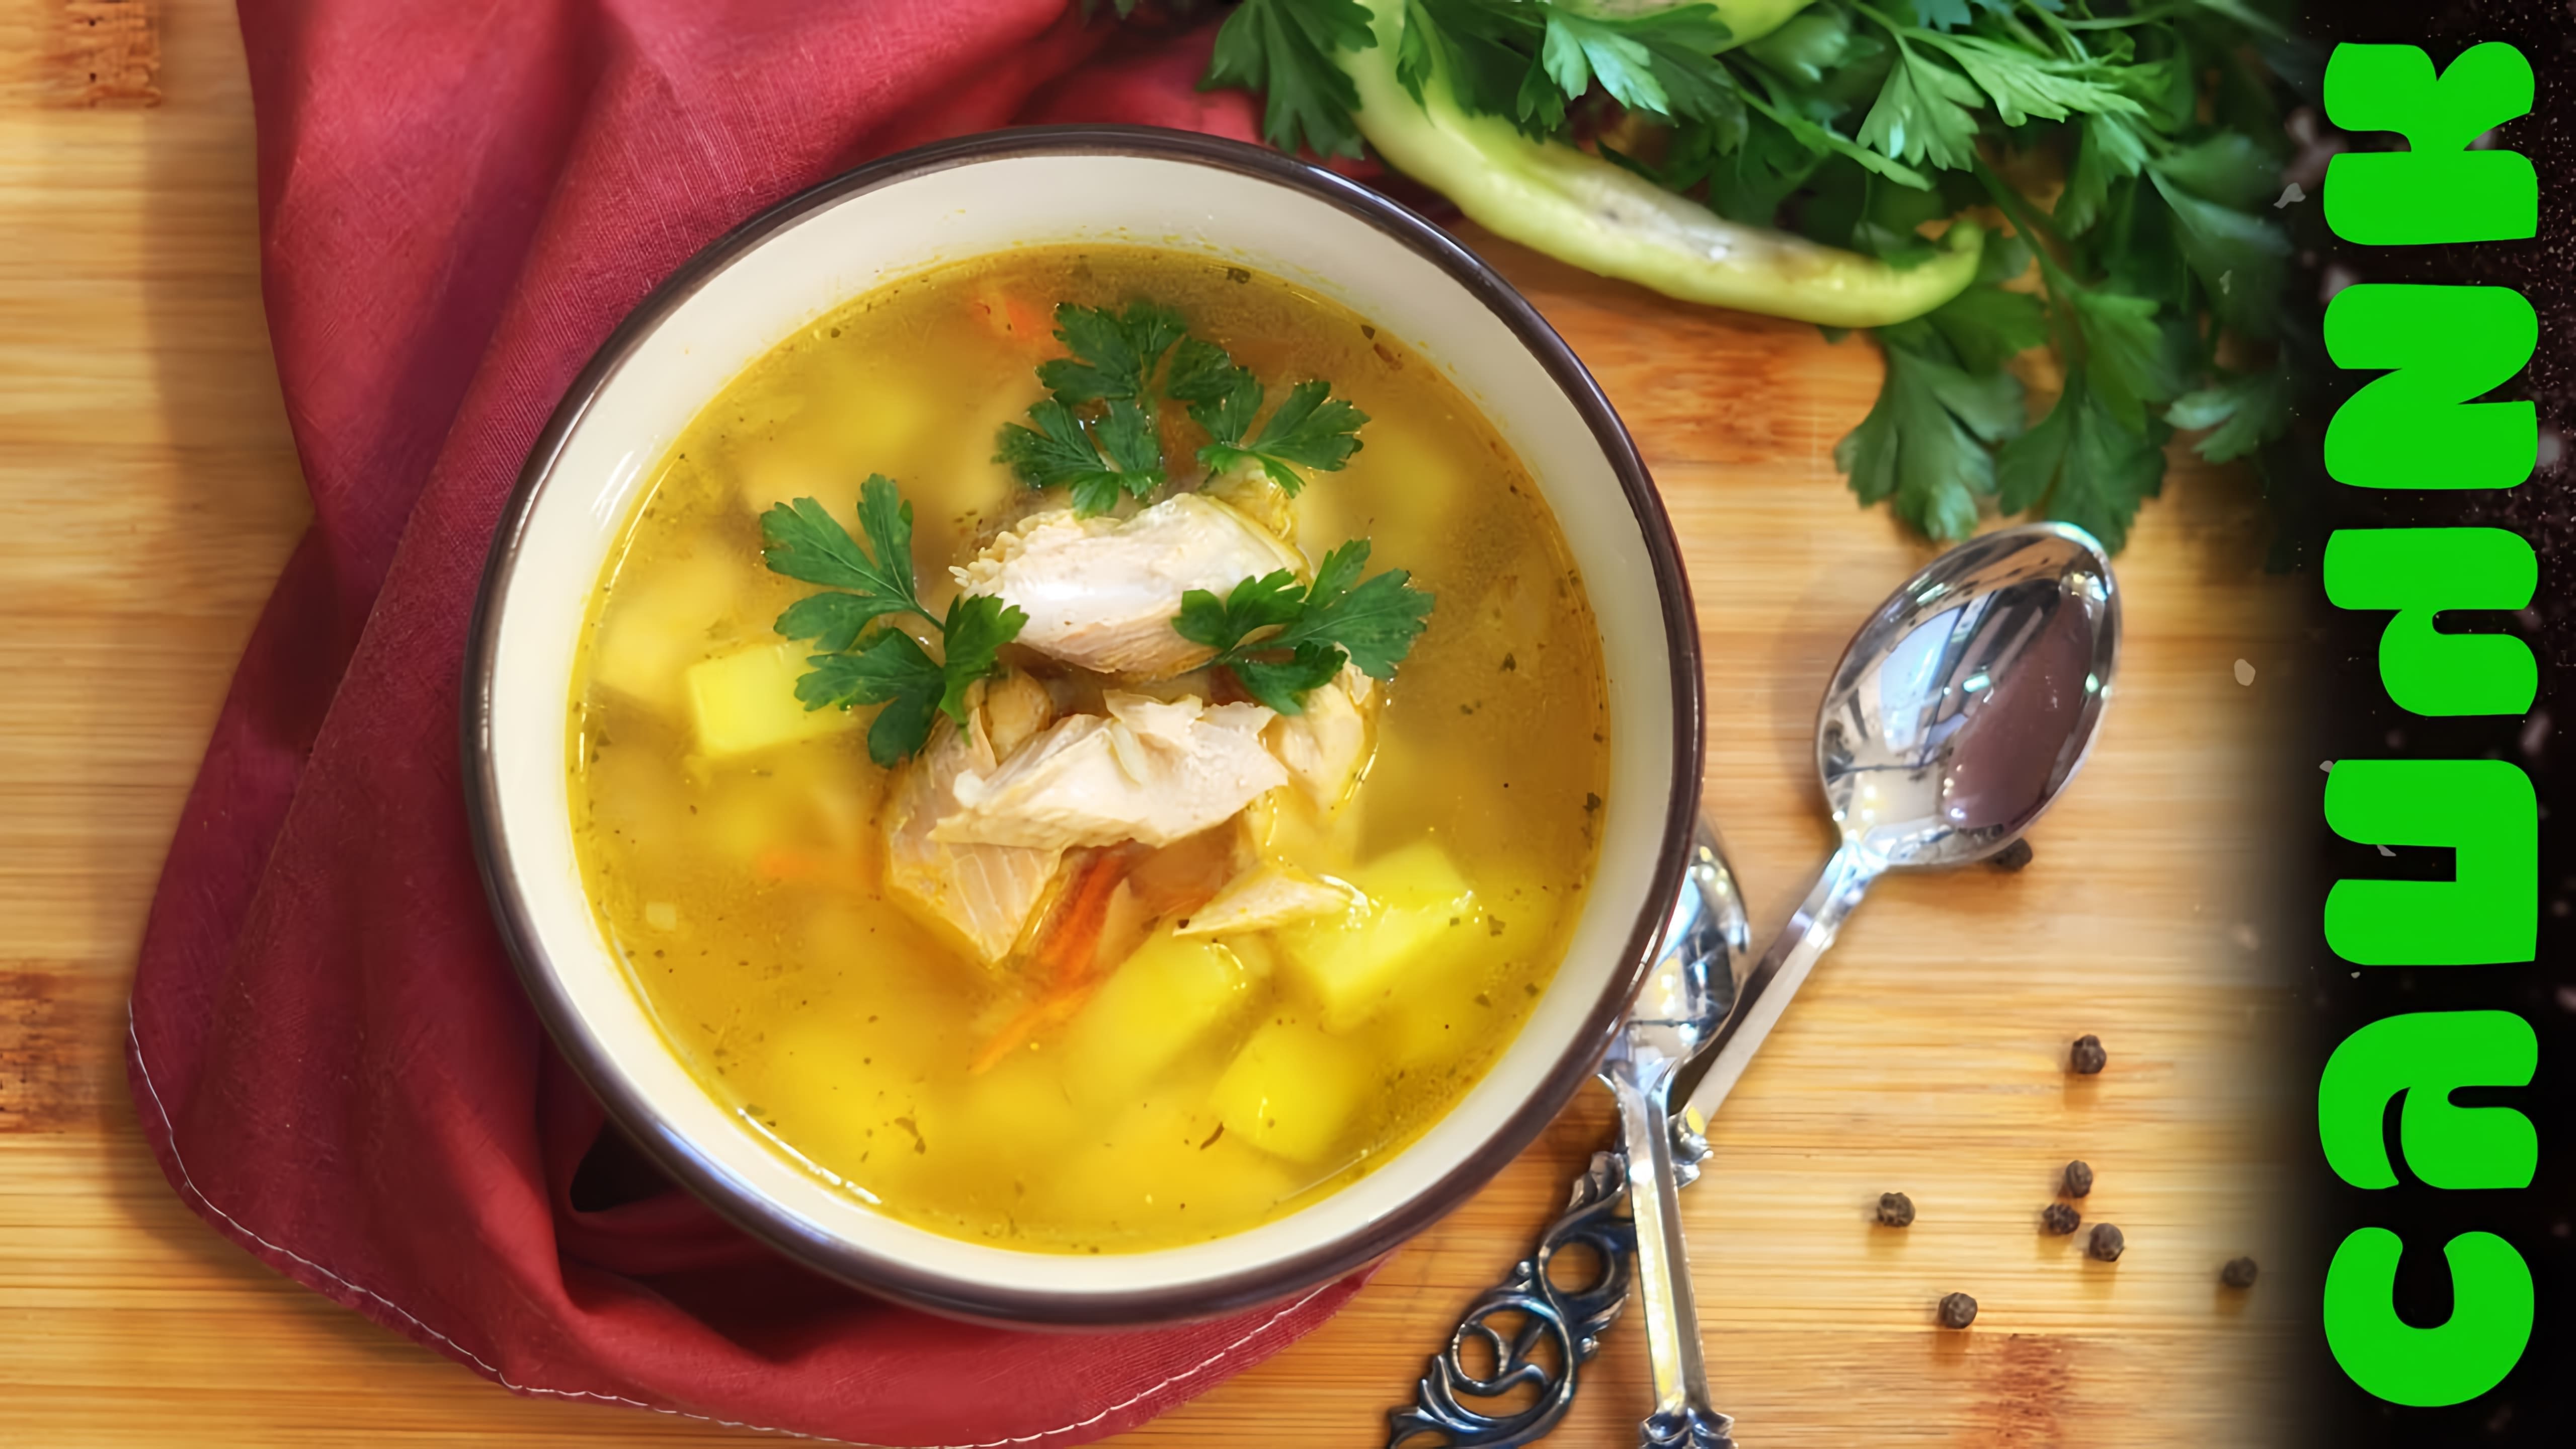 В этом видео демонстрируется рецепт приготовления рыбного супа из свежей горбуши